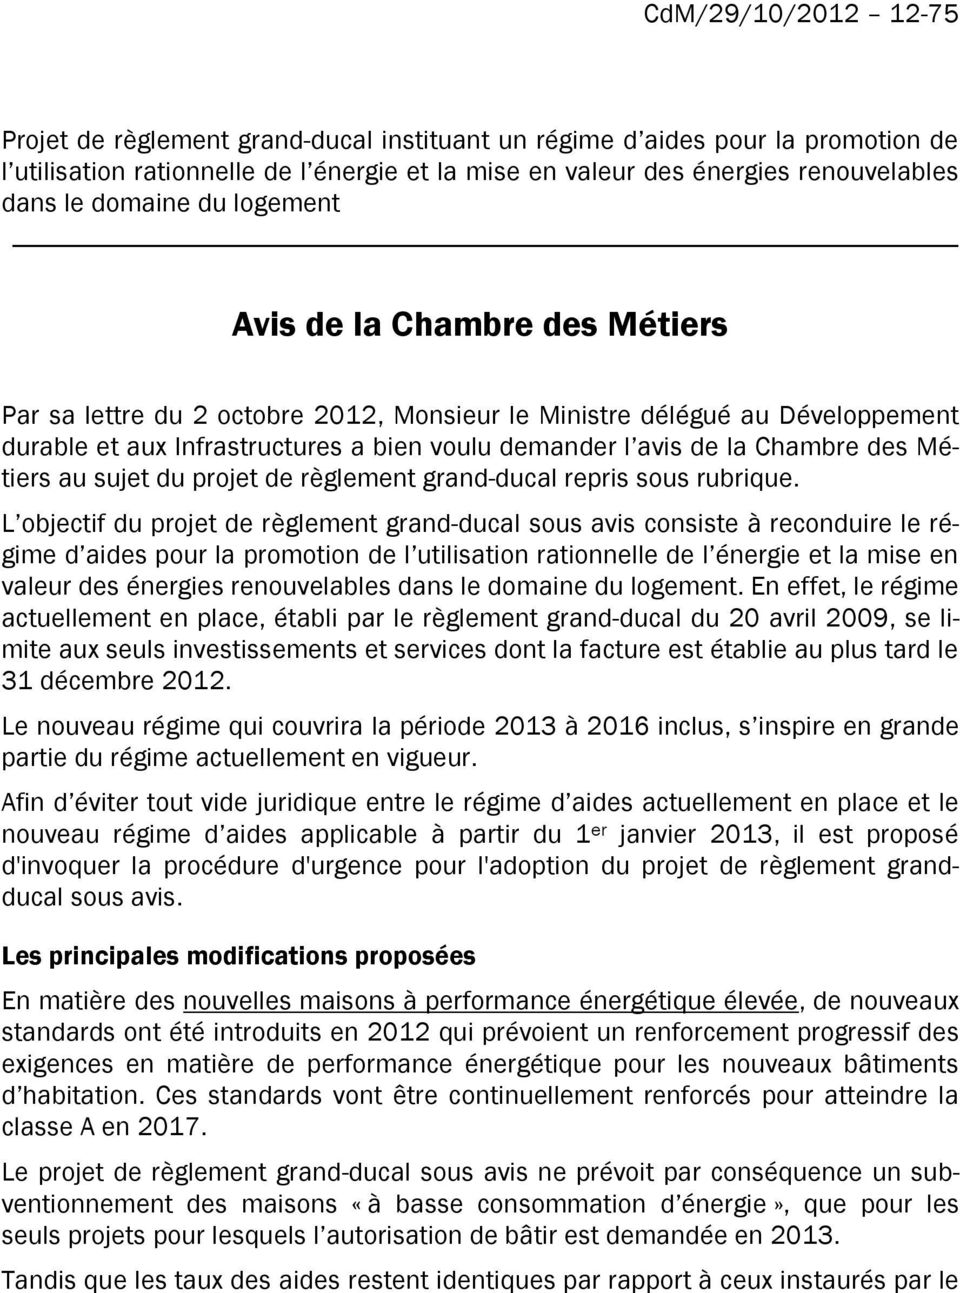 Chambre des Métiers au sujet du projet de règlement grand-ducal repris sous rubrique.